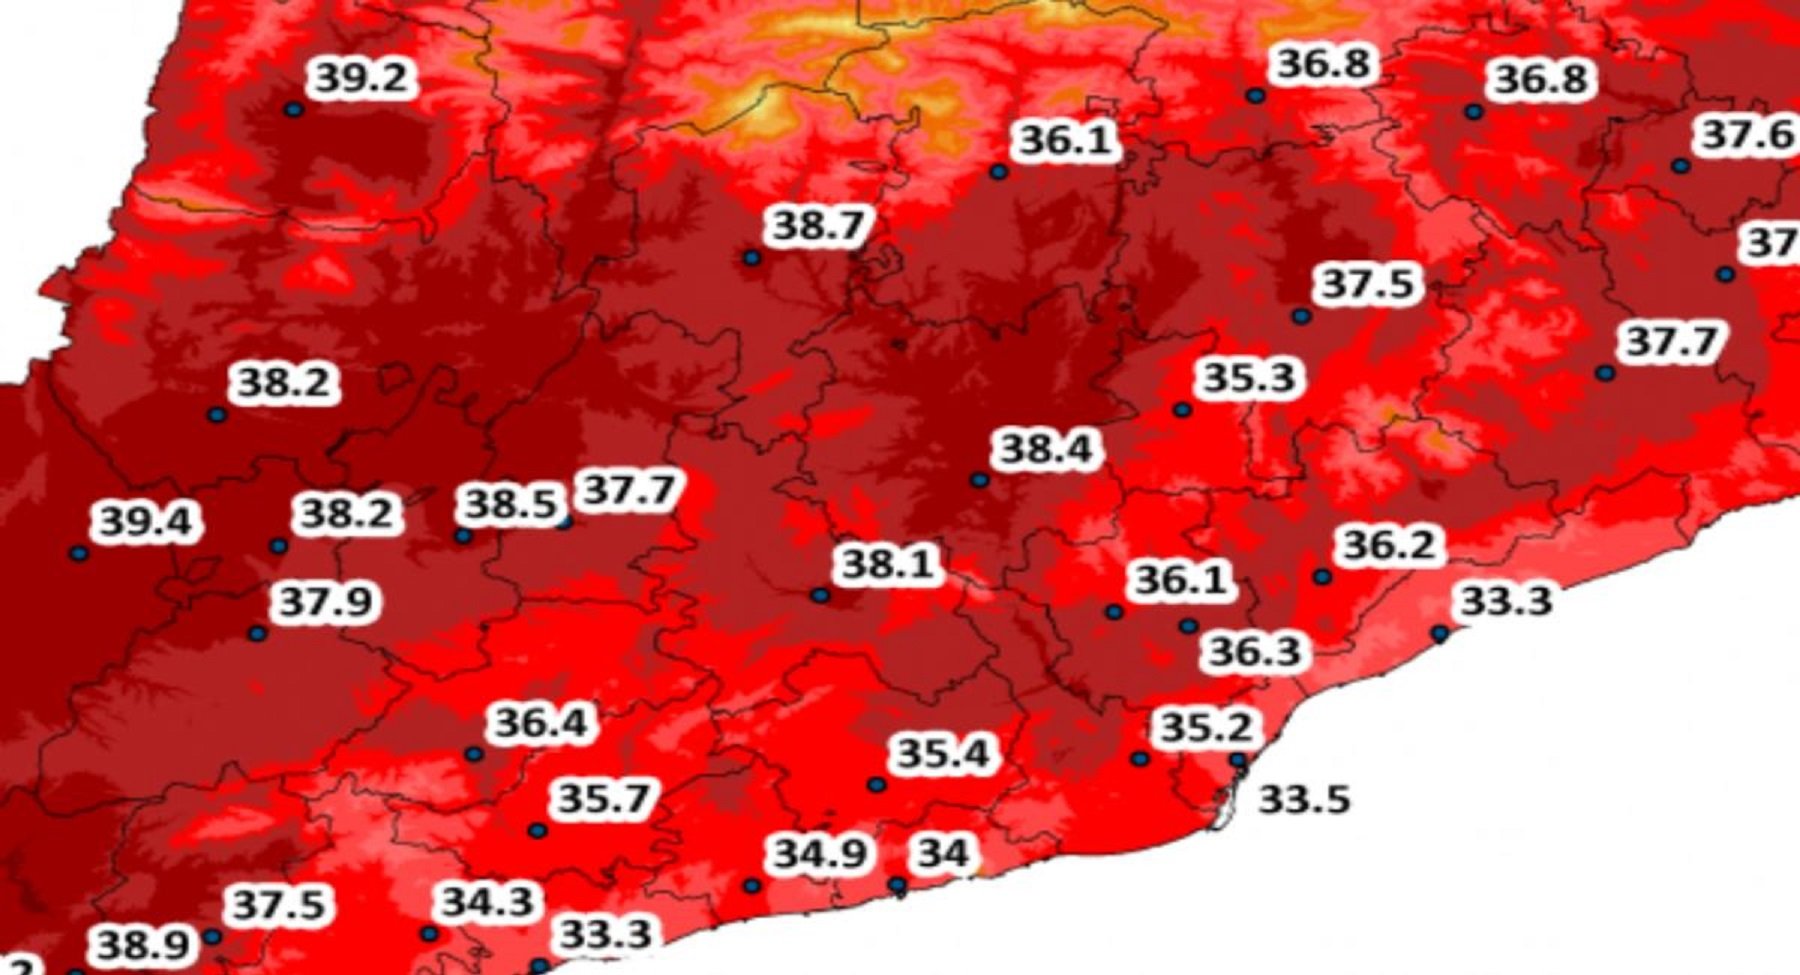 Alerta a Catalunya per calor extrema: els termòmetres poden arribar als 40 graus